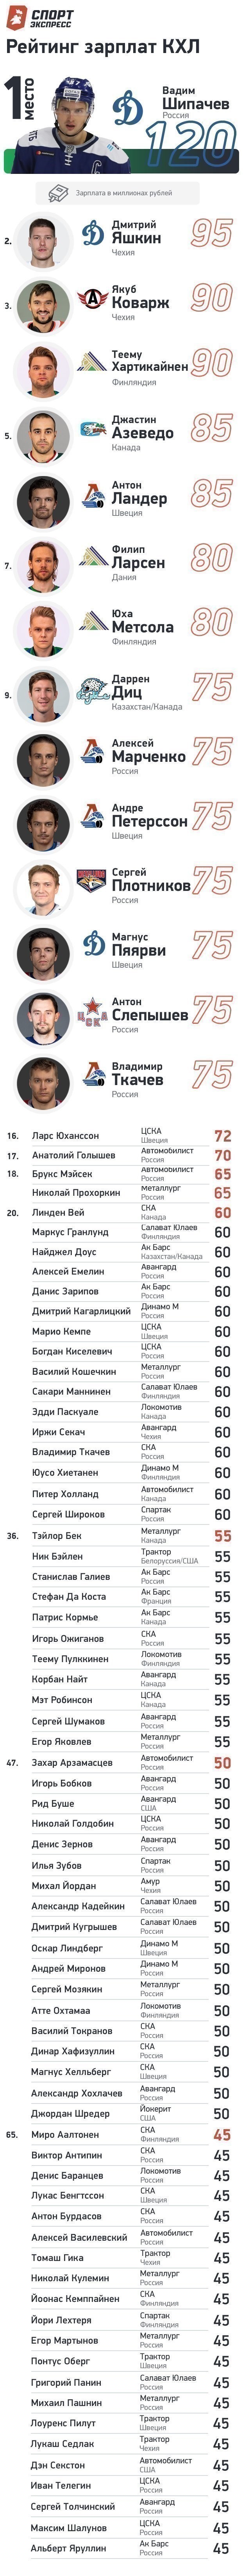 Рейтинг зарплат КХЛ в сезоне 2020/21. Фото "СЭ"